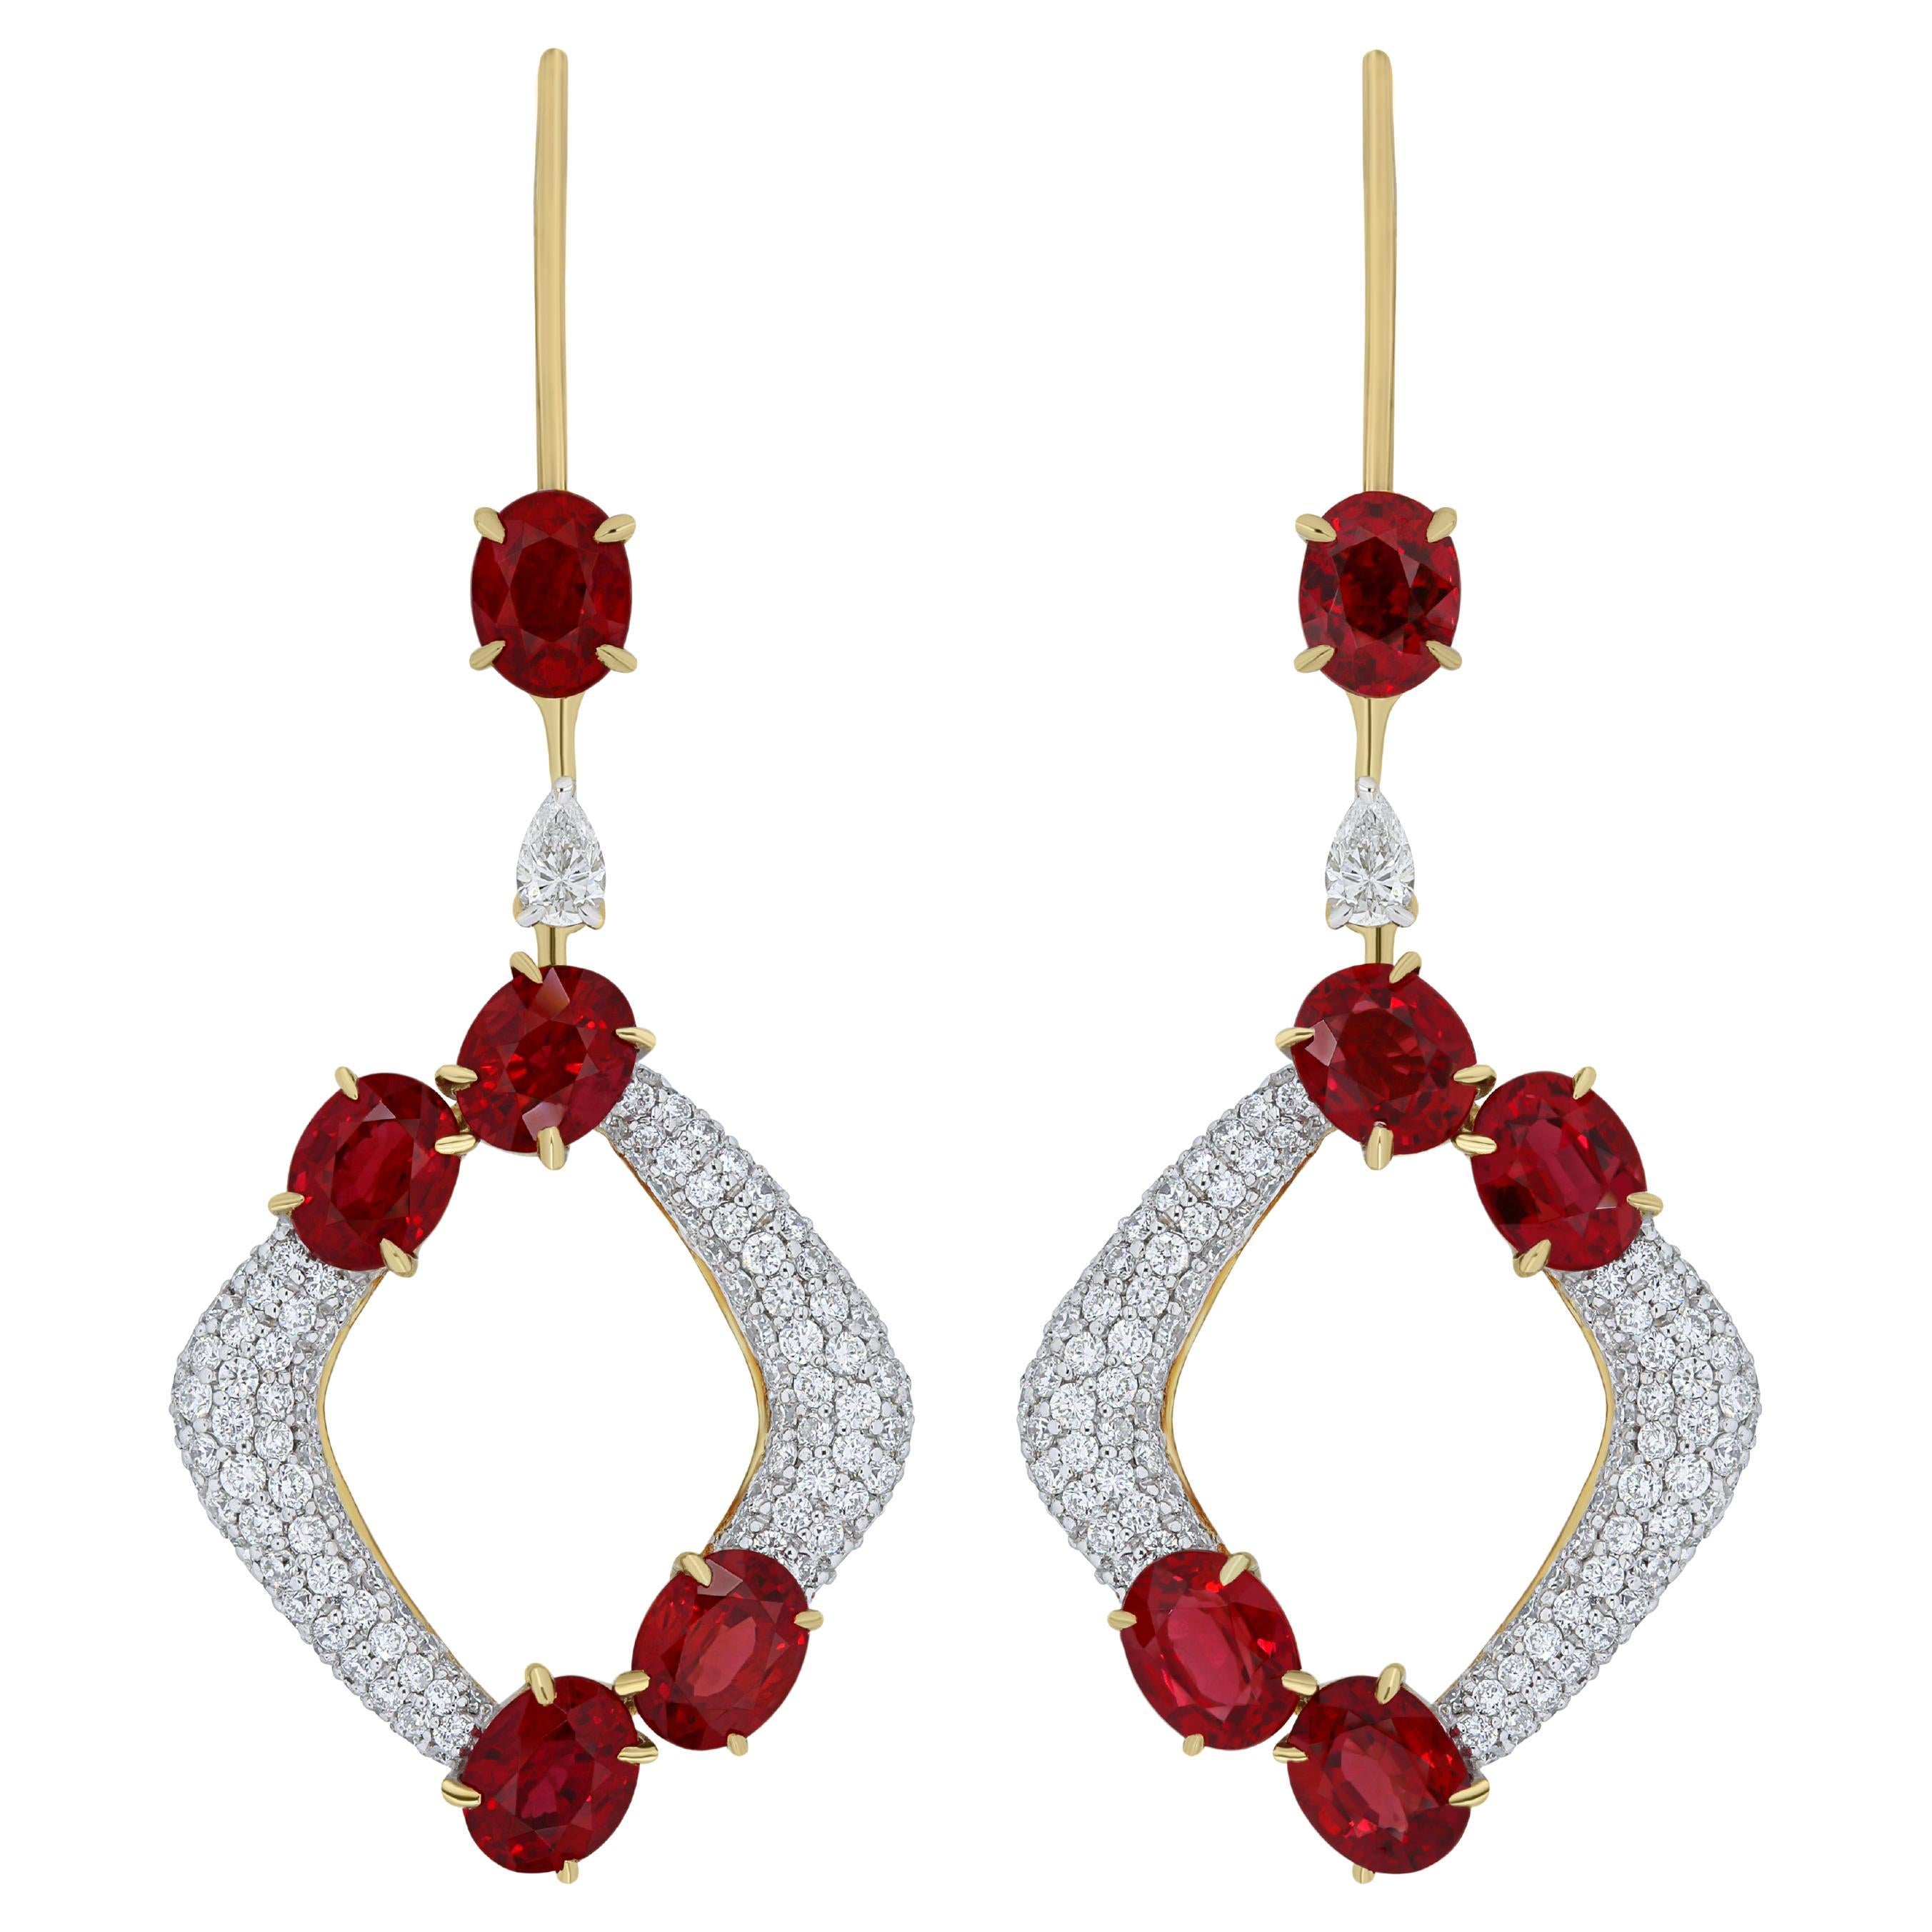 Boucles d'oreilles cloutées en or blanc 18 carats avec rubis et diamants